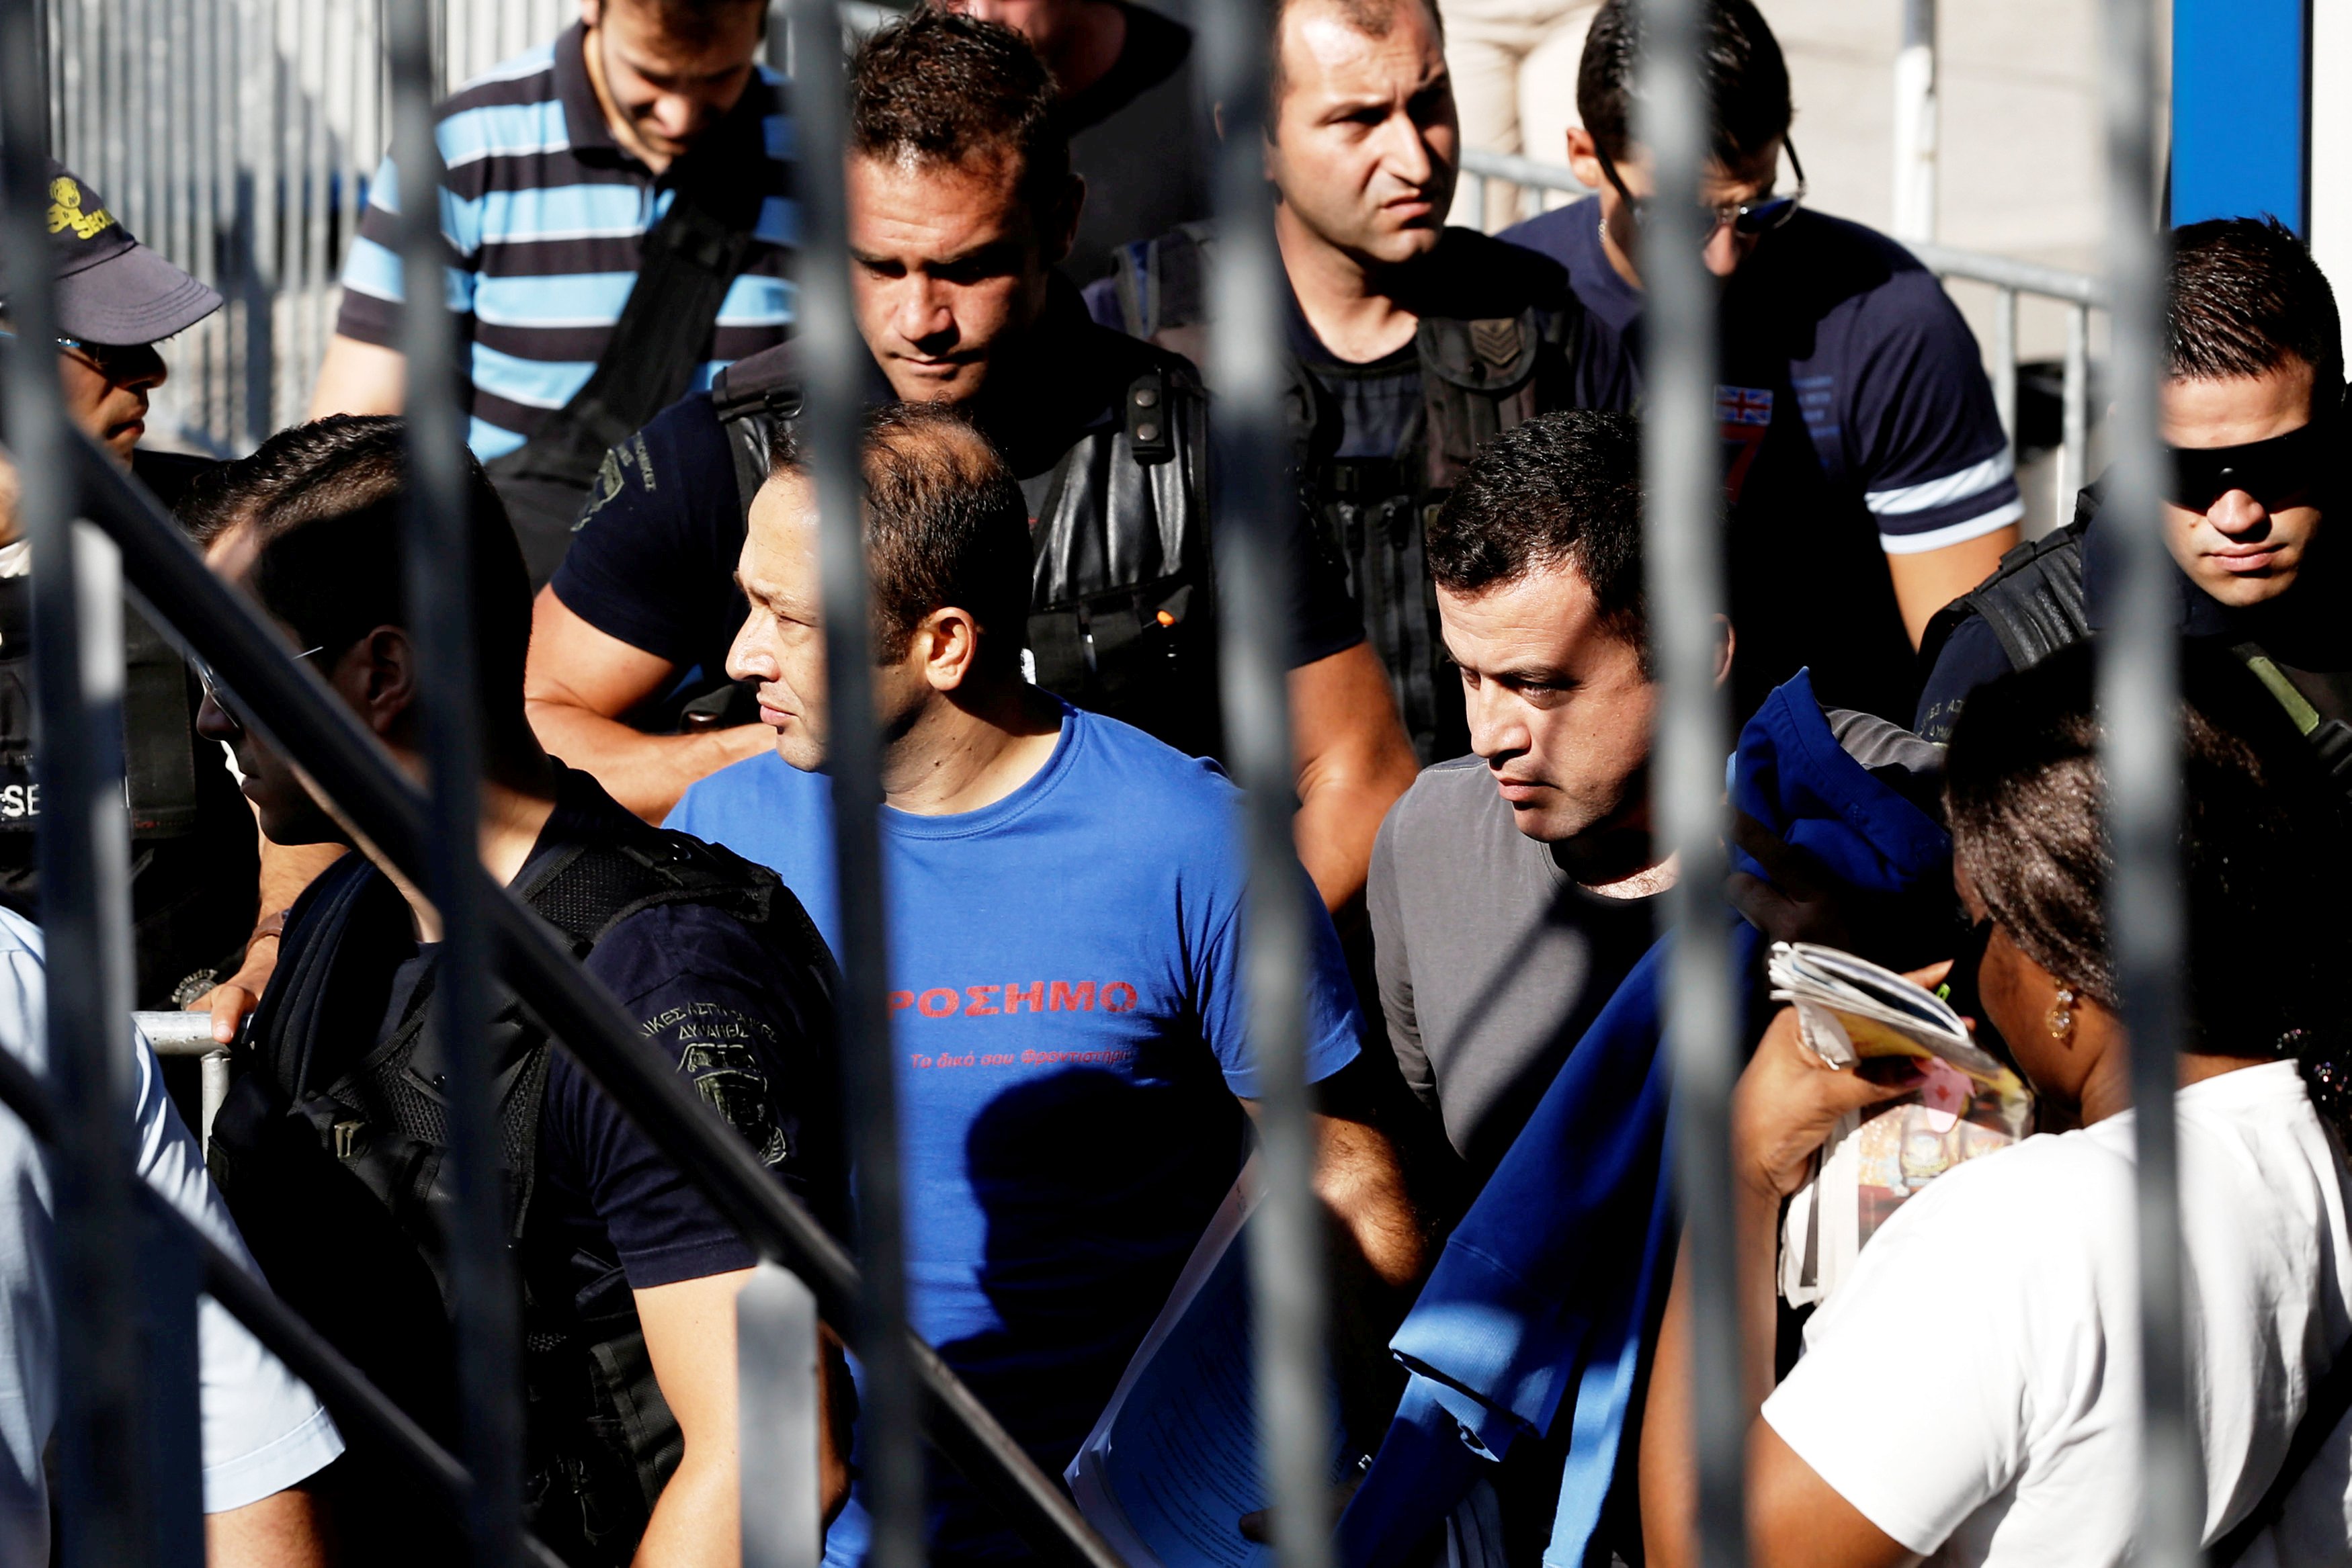 مئات المعتقلين الأتراك وراء القضبان لمجرد الشبهة